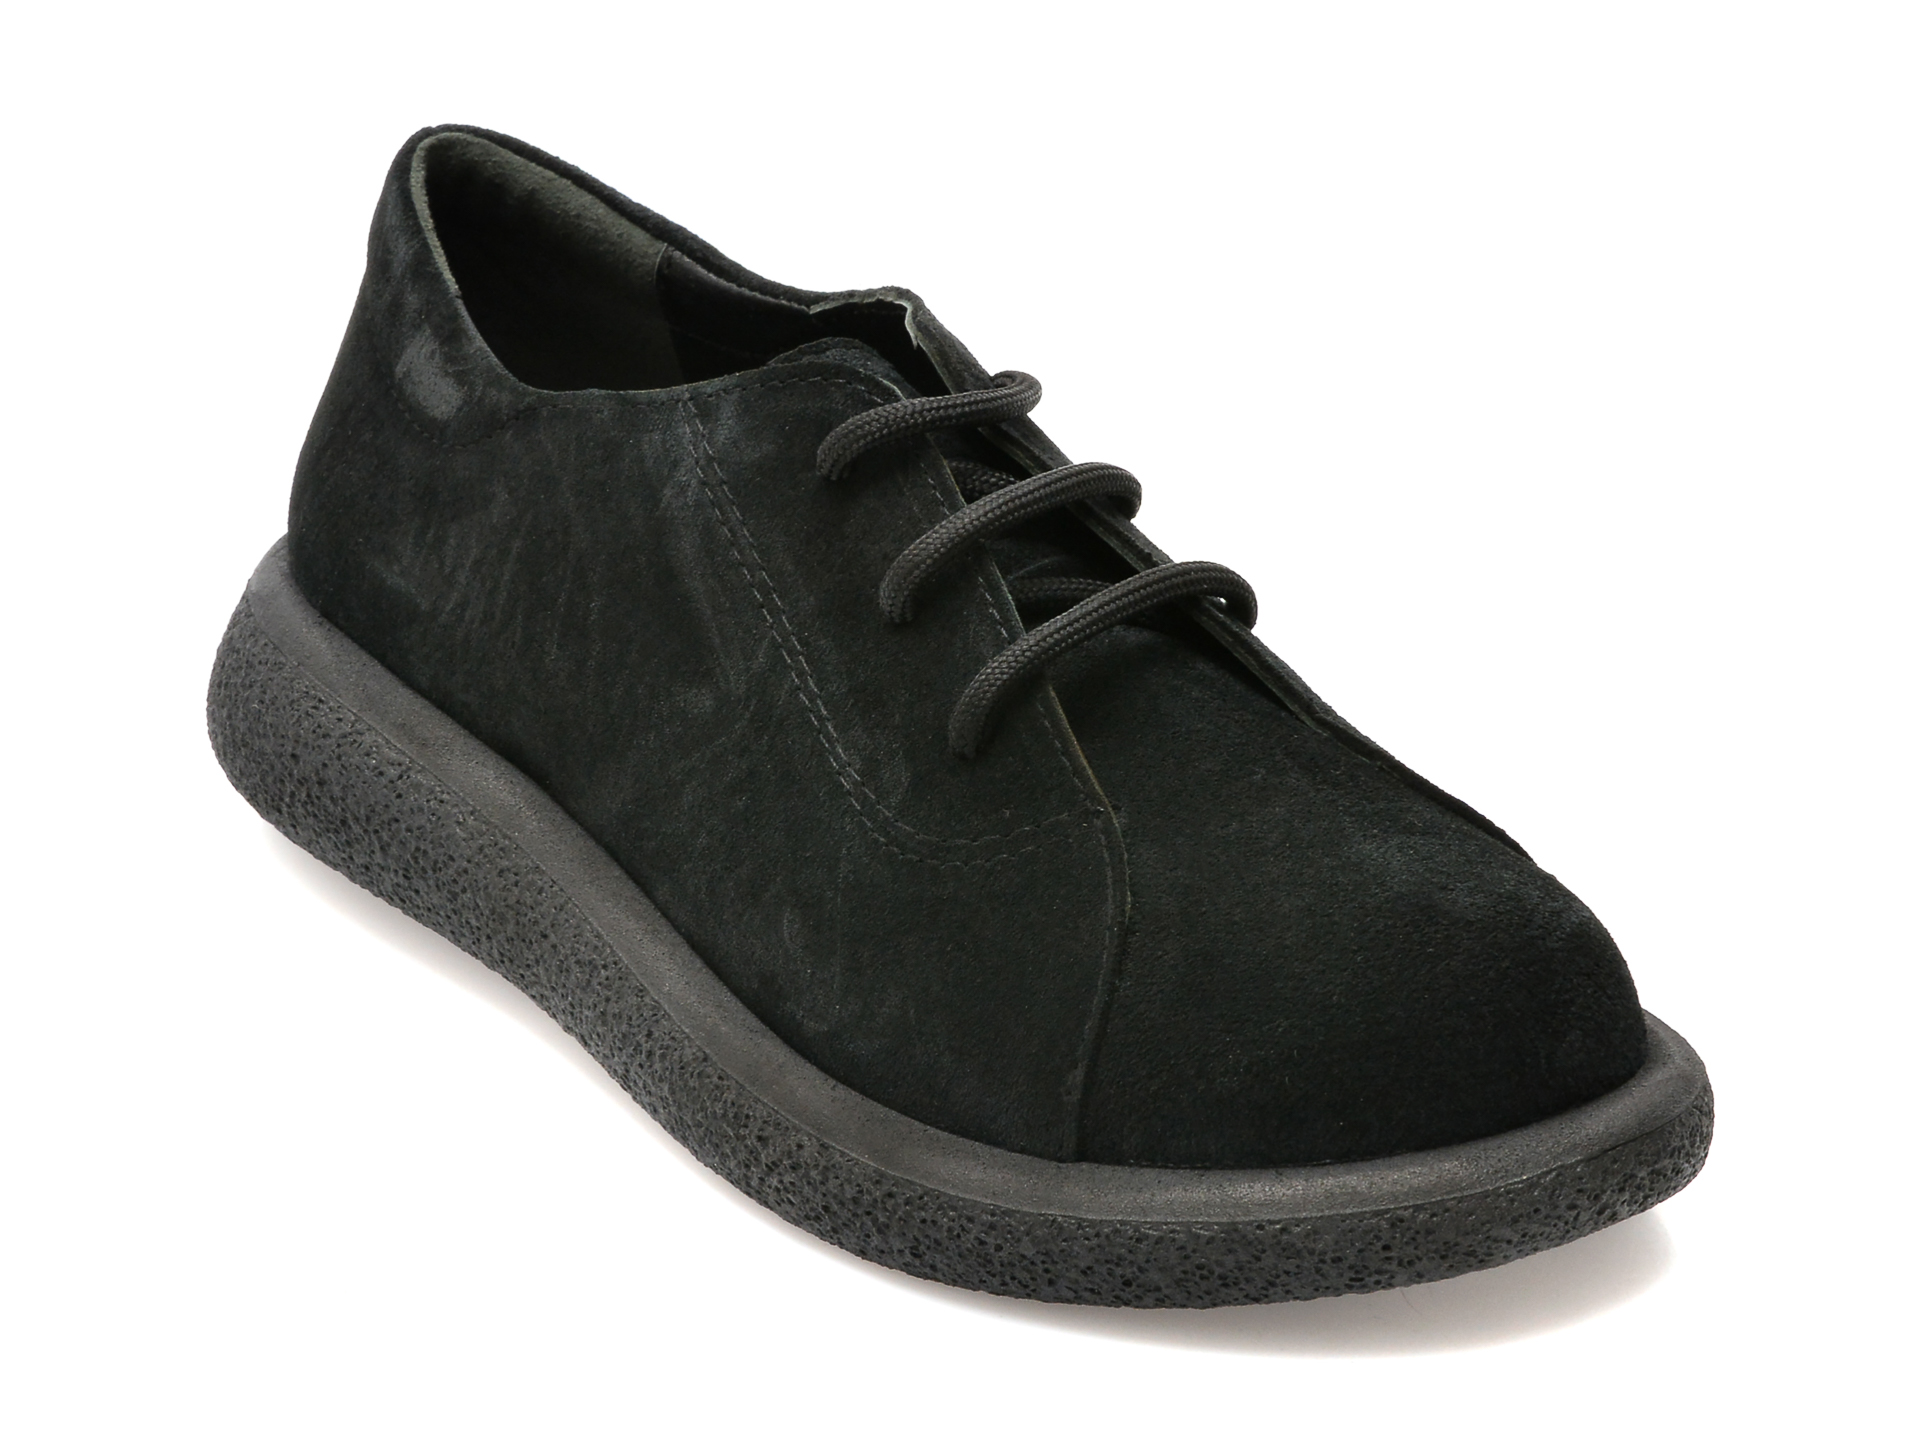 Pantofi FLAVIA PASSINI negri, 105, din piele intoarsa femei 2023-03-24